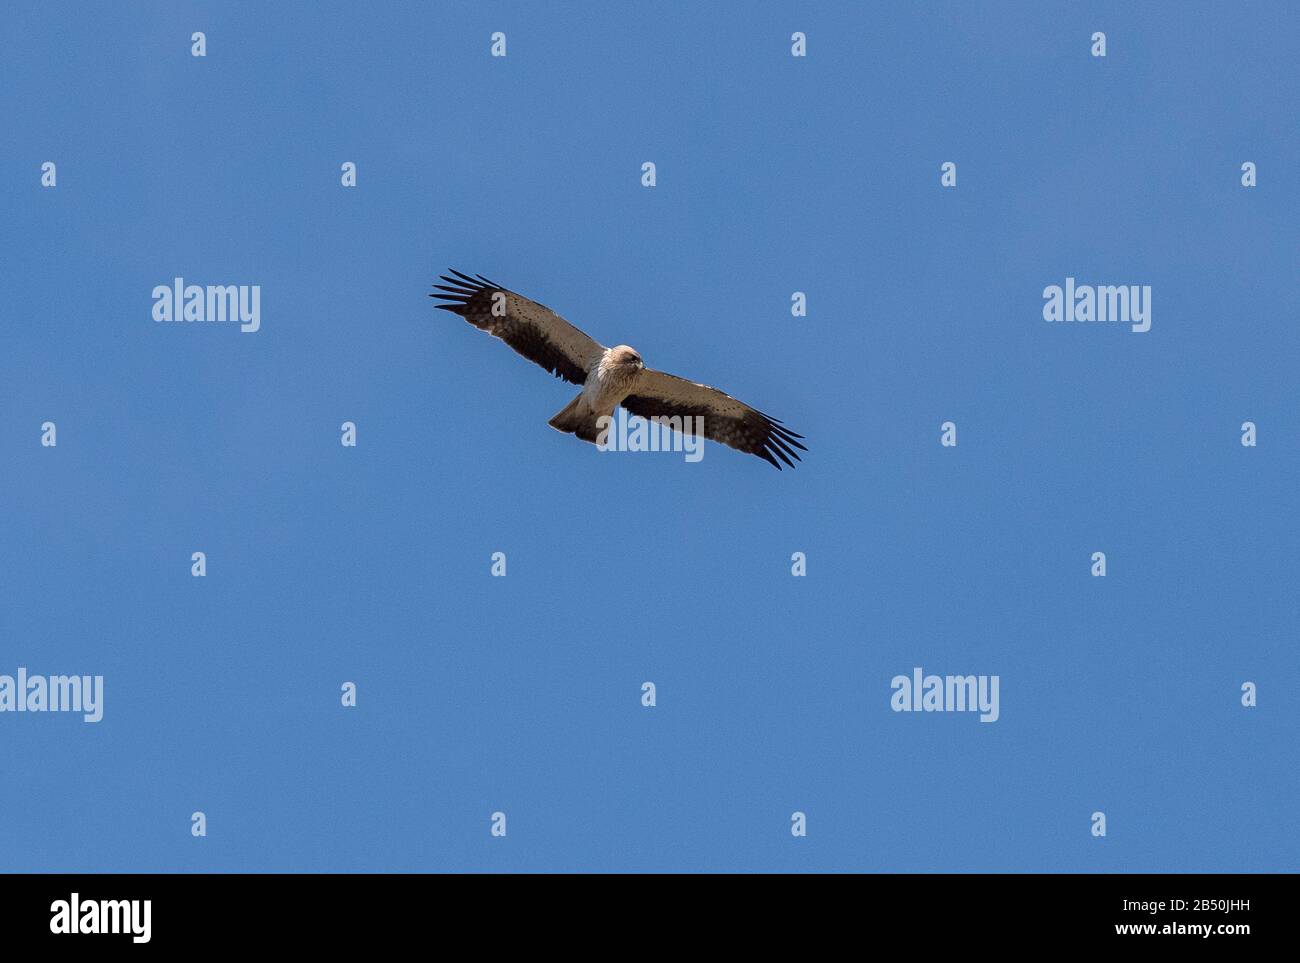 Bonellis Adler, Aquila fasciata, im Herbst im Flug gegen einen blauen Himmel, Nordspanien. Stockfoto